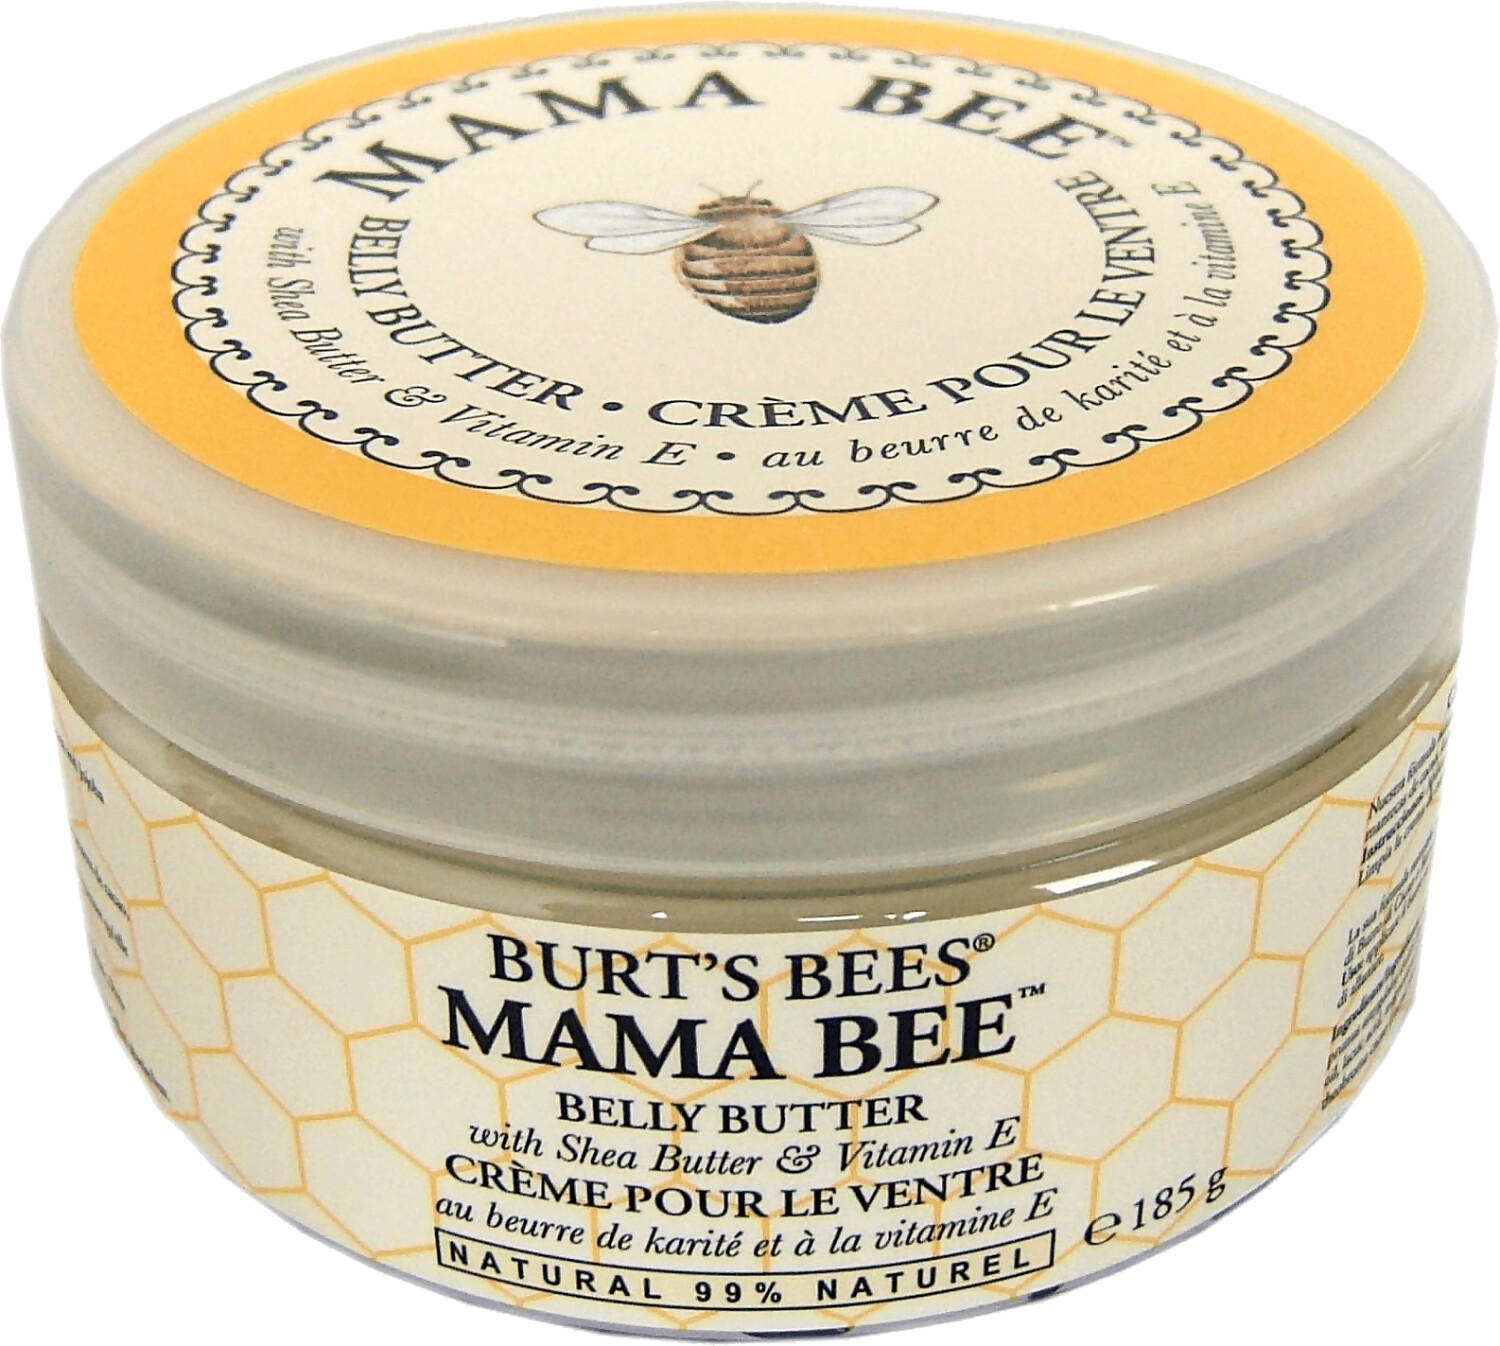 Burt's Bees Mama Bee Body Butter (185g)